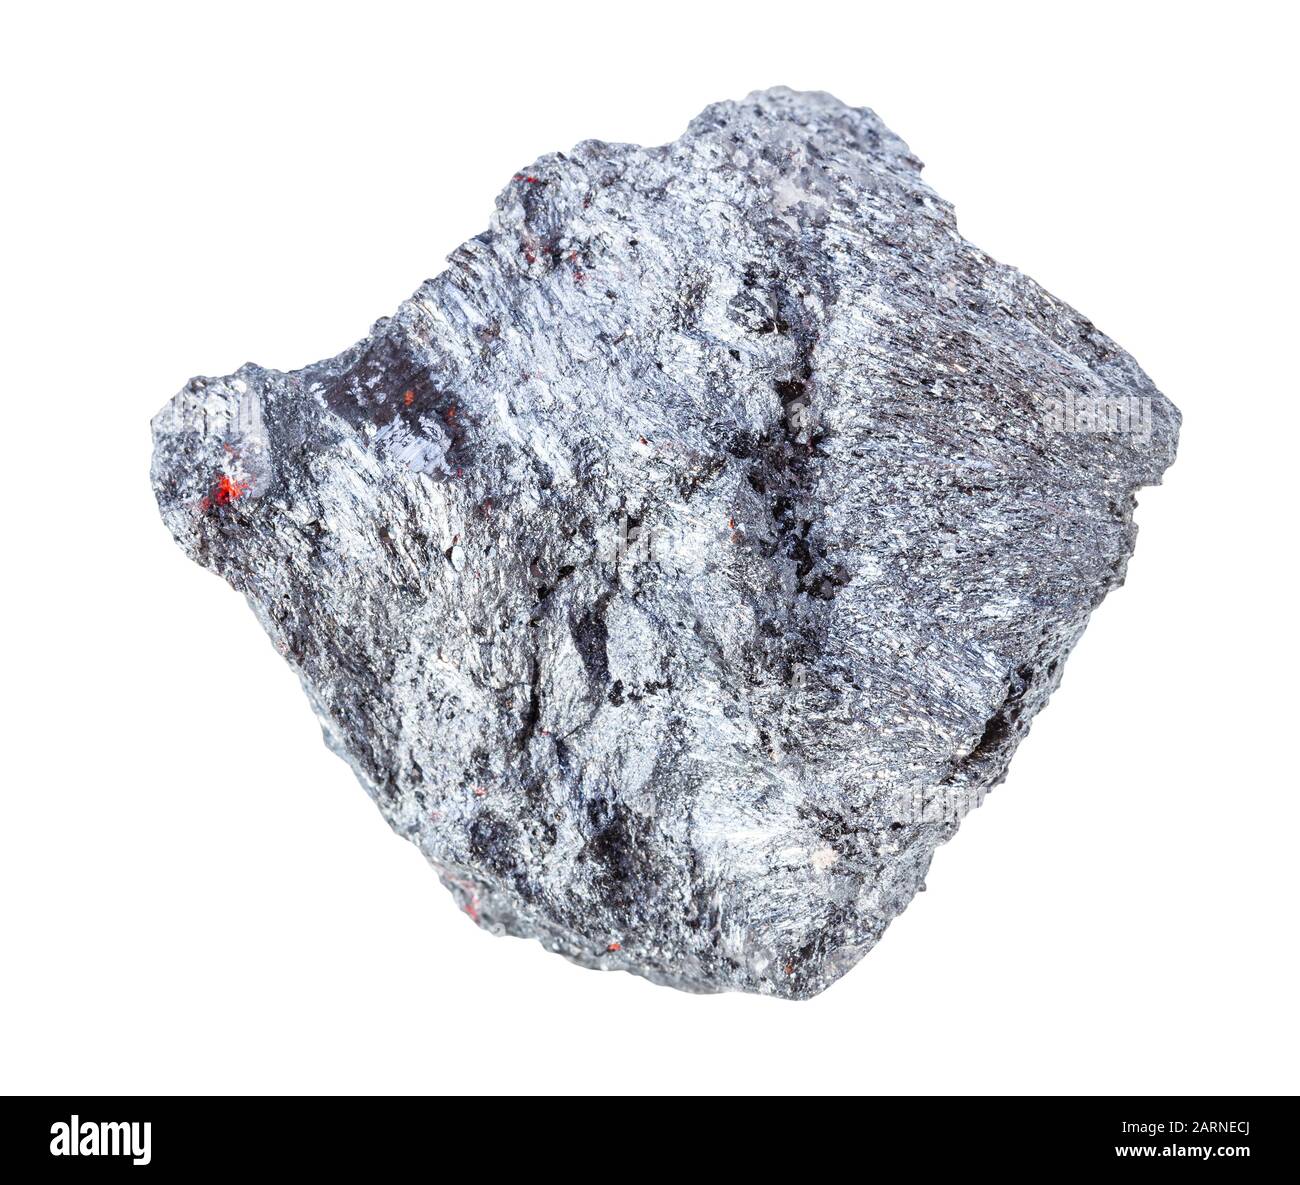 Closeup di campione di minerale naturale dalla raccolta geologica - Greggio Stibnite (Antimonite) minerale isolato su sfondo bianco Foto Stock